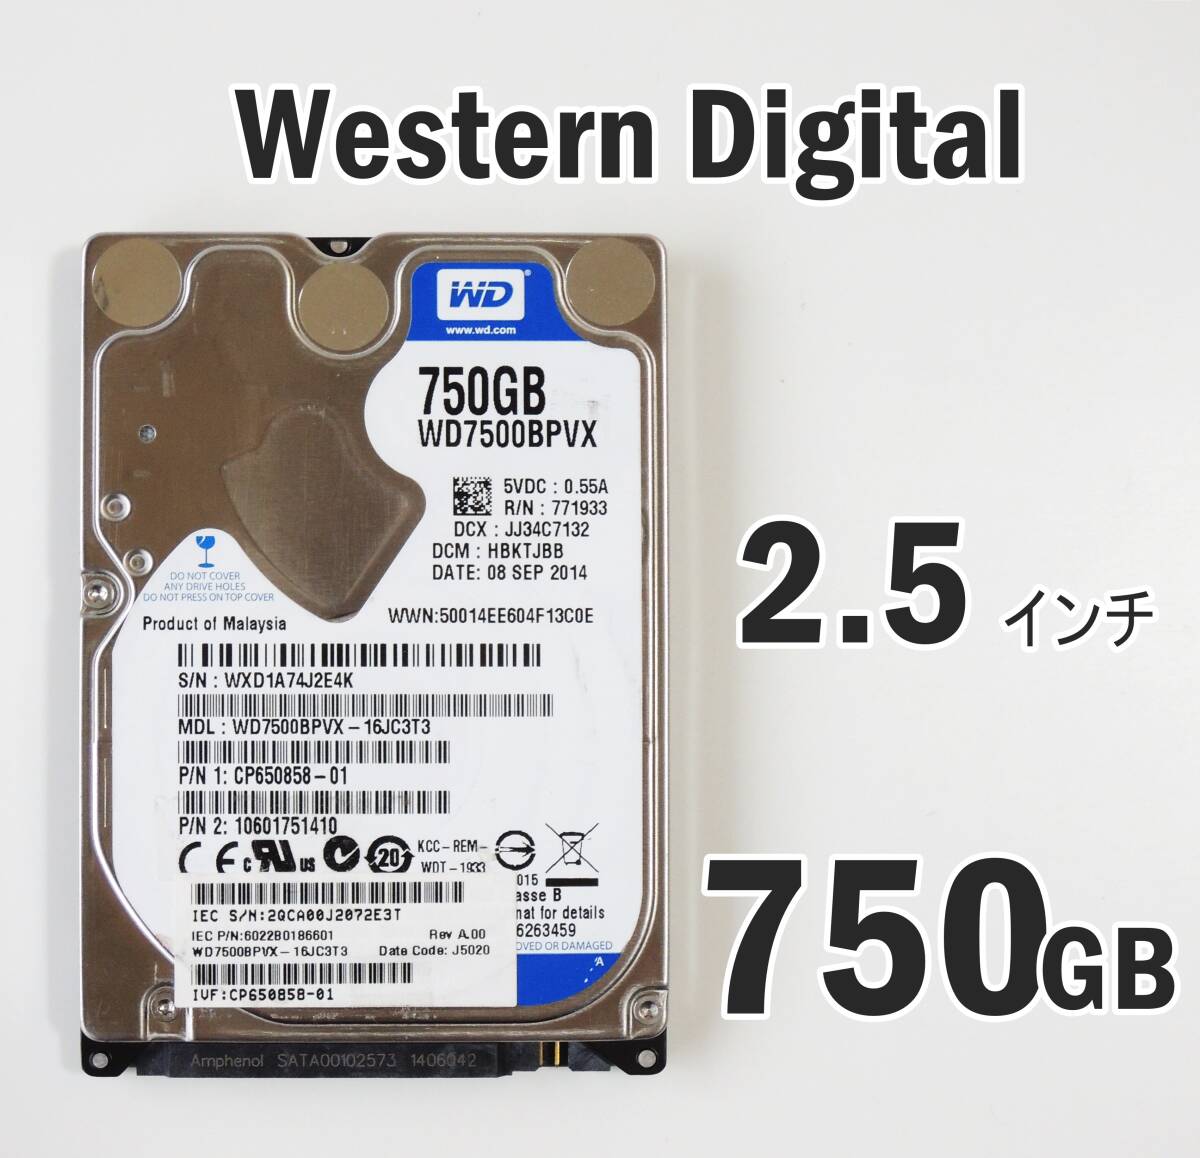 851時間 WD Blue 750GB 2.5インチ HDD WD7500BPVX-16JC3T3 Serial ATA 600 正常品 Western Digital #J2E4Kの画像1